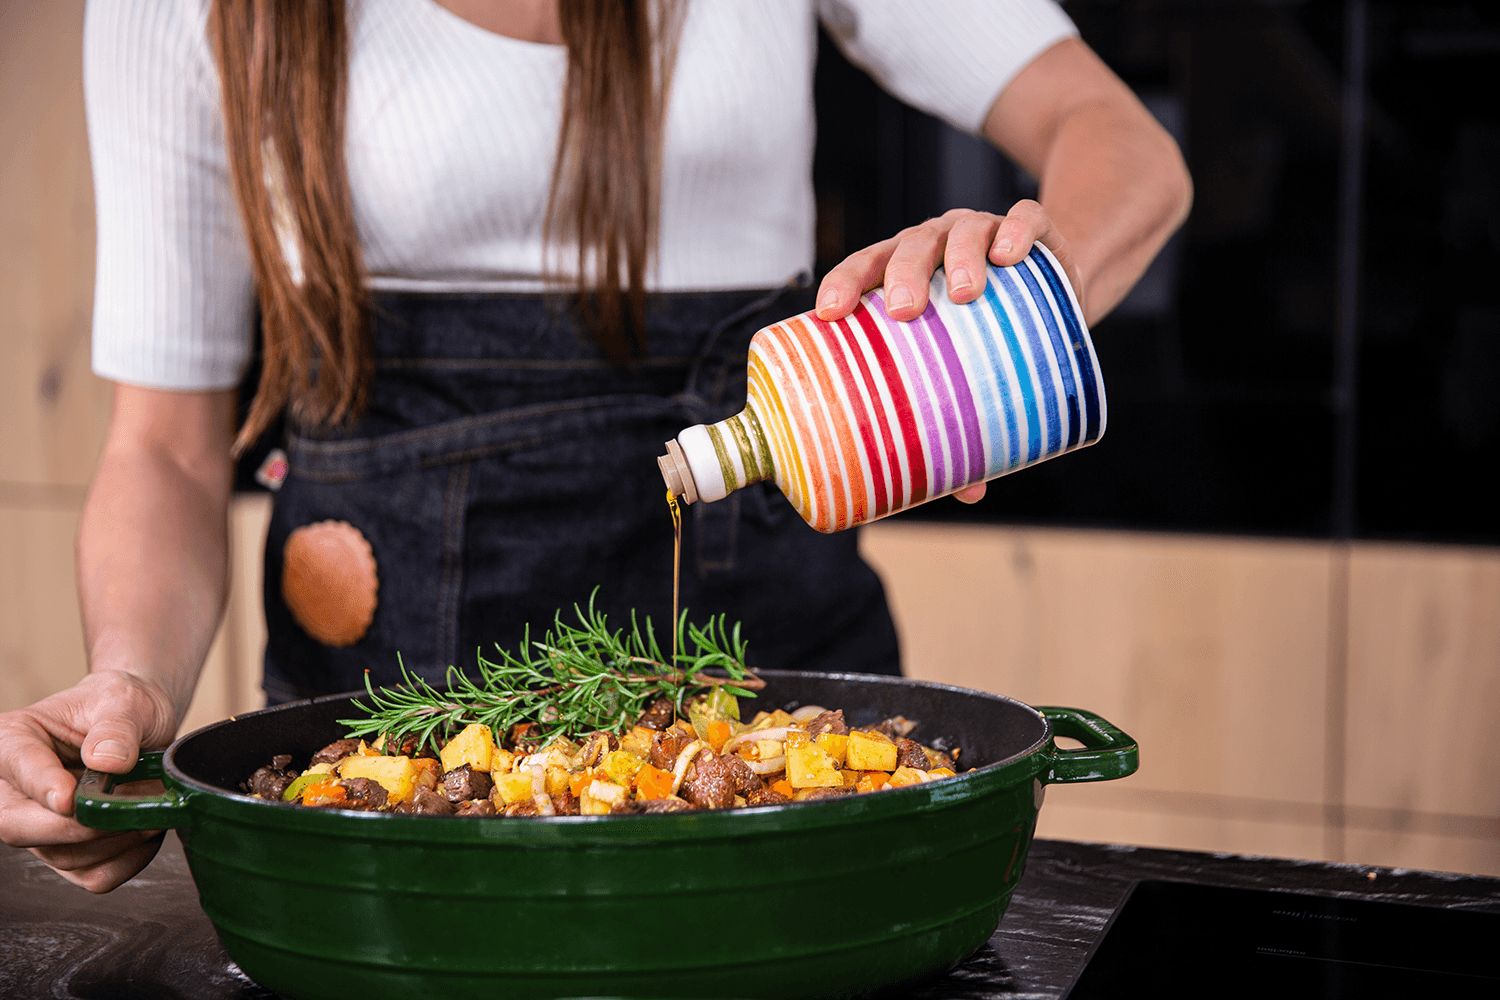 Sally benutzt die Olivenölflasche im Rainbow-Stil in einer Küche